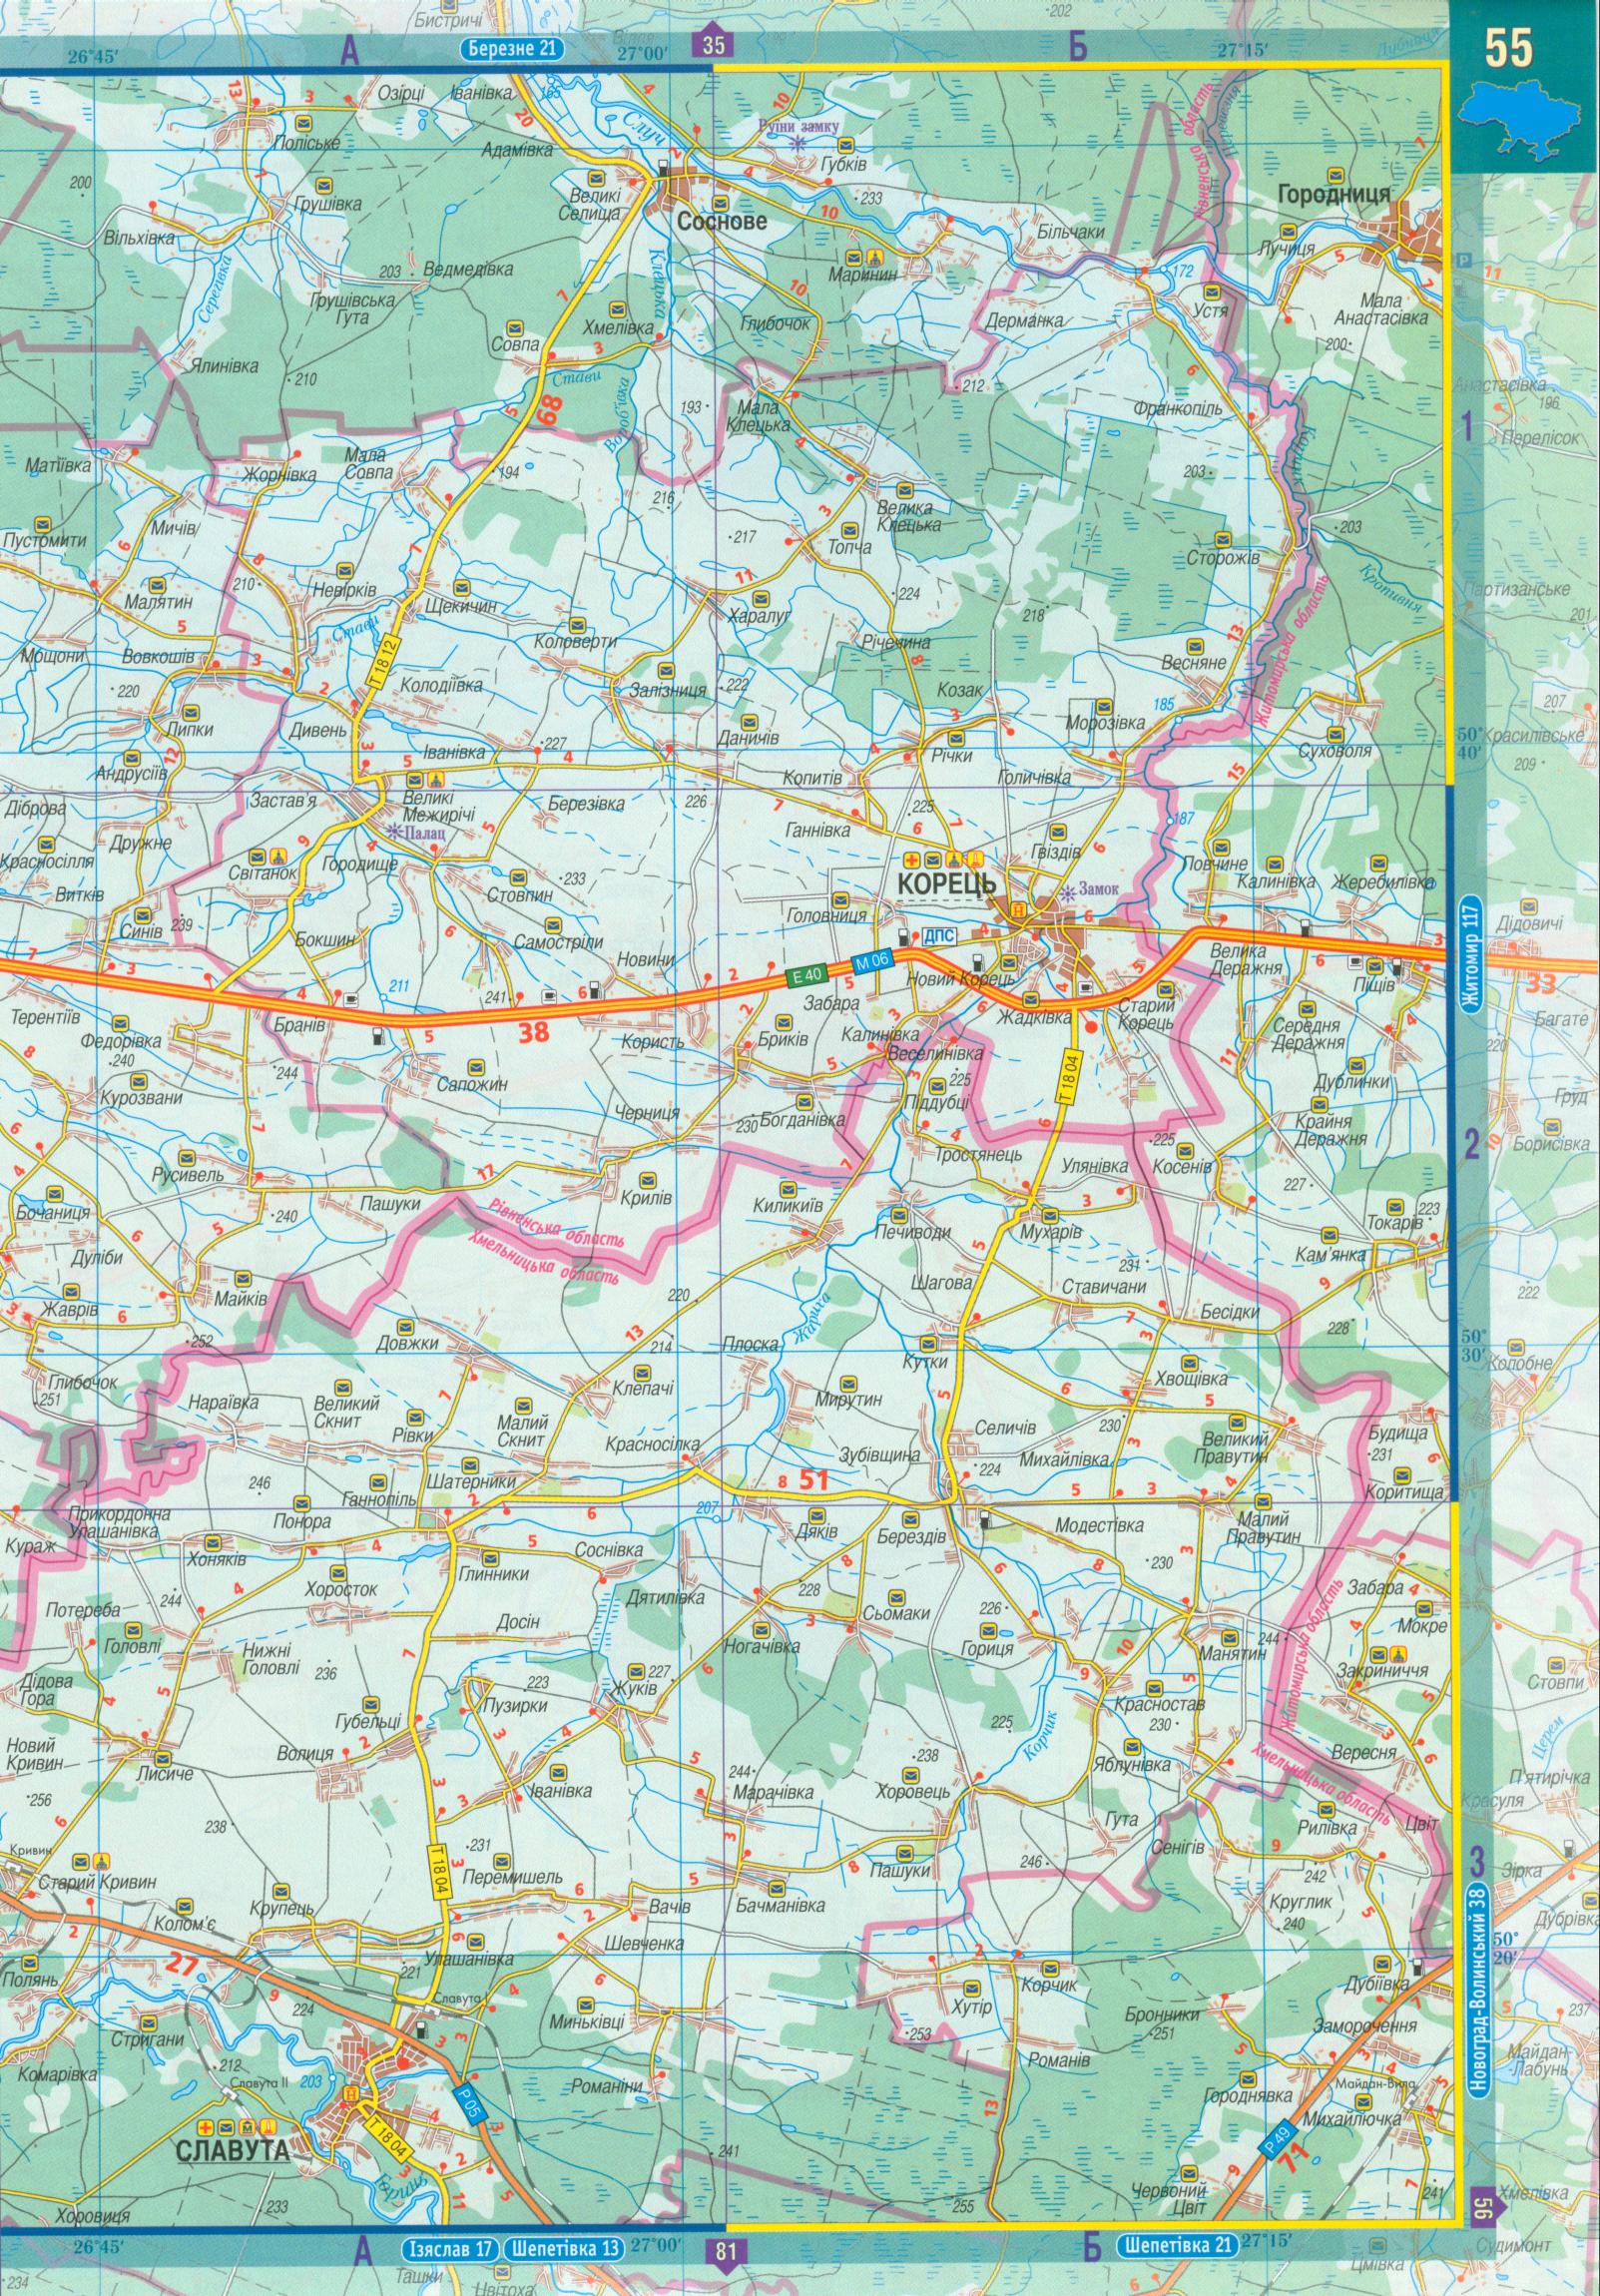 Карта Ровенской области. Автомобильный атлас масштаба 1см:2,5км на украинском - карта Ровенской области, B1 - 